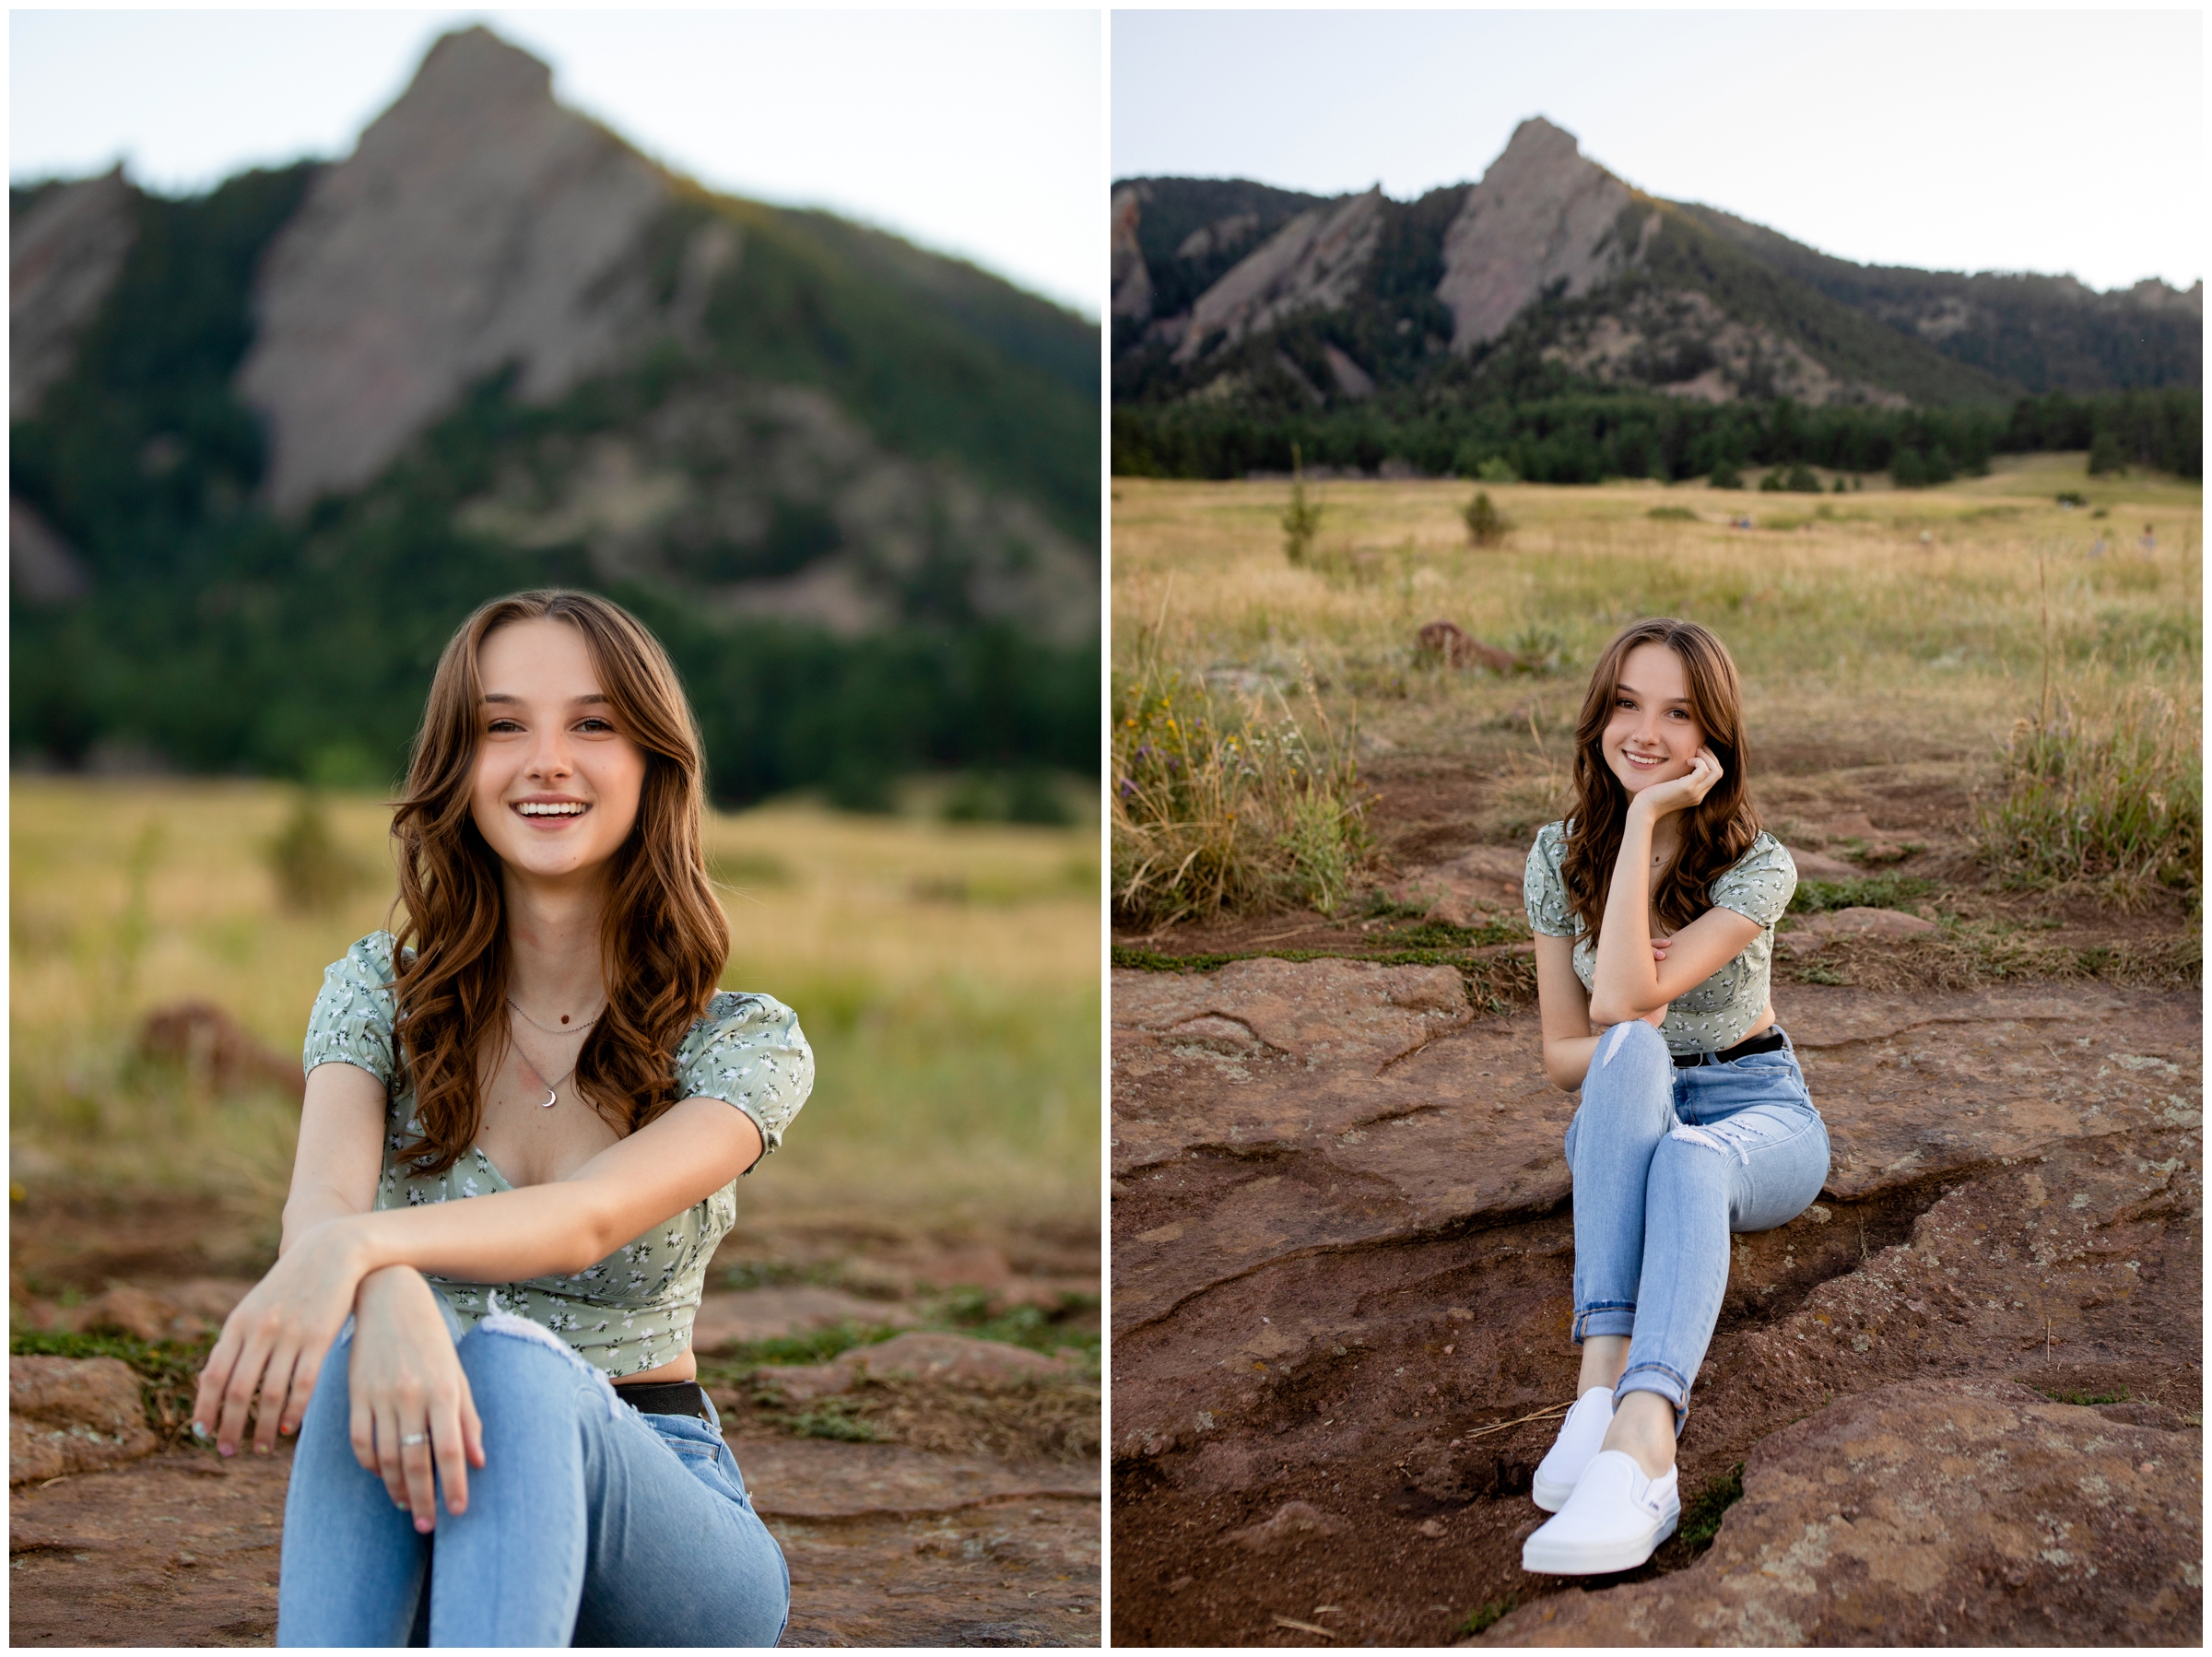 Senior pictures in Boulder at Chautauqua Park by best Colorado senior portrait photographer Plum Pretty Photography